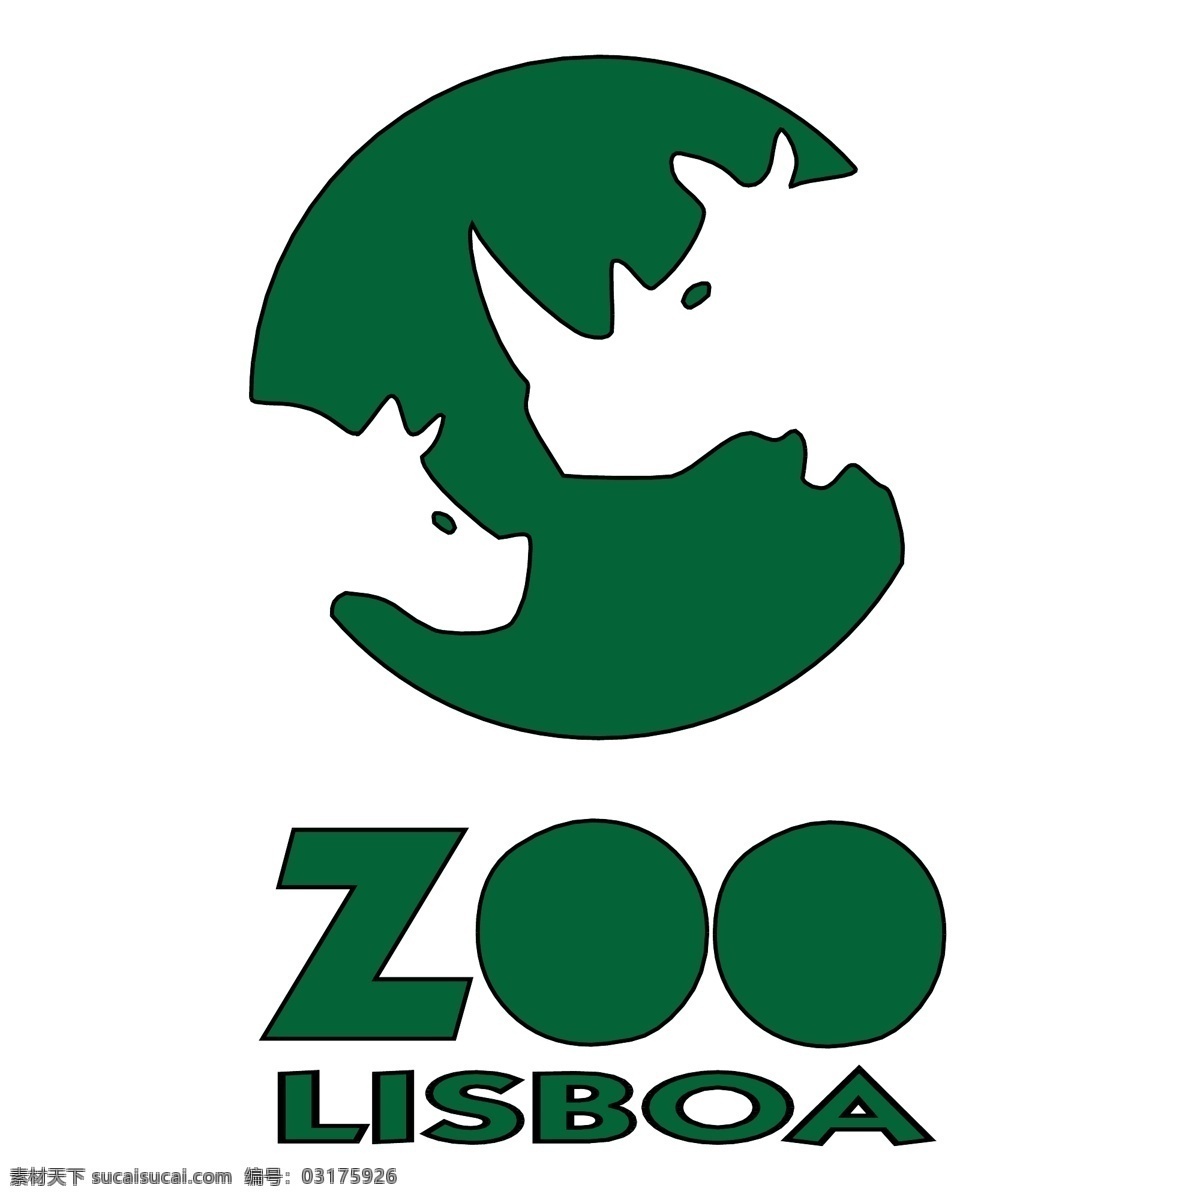 里斯本 动物园 免费 标识 psd源文件 logo设计